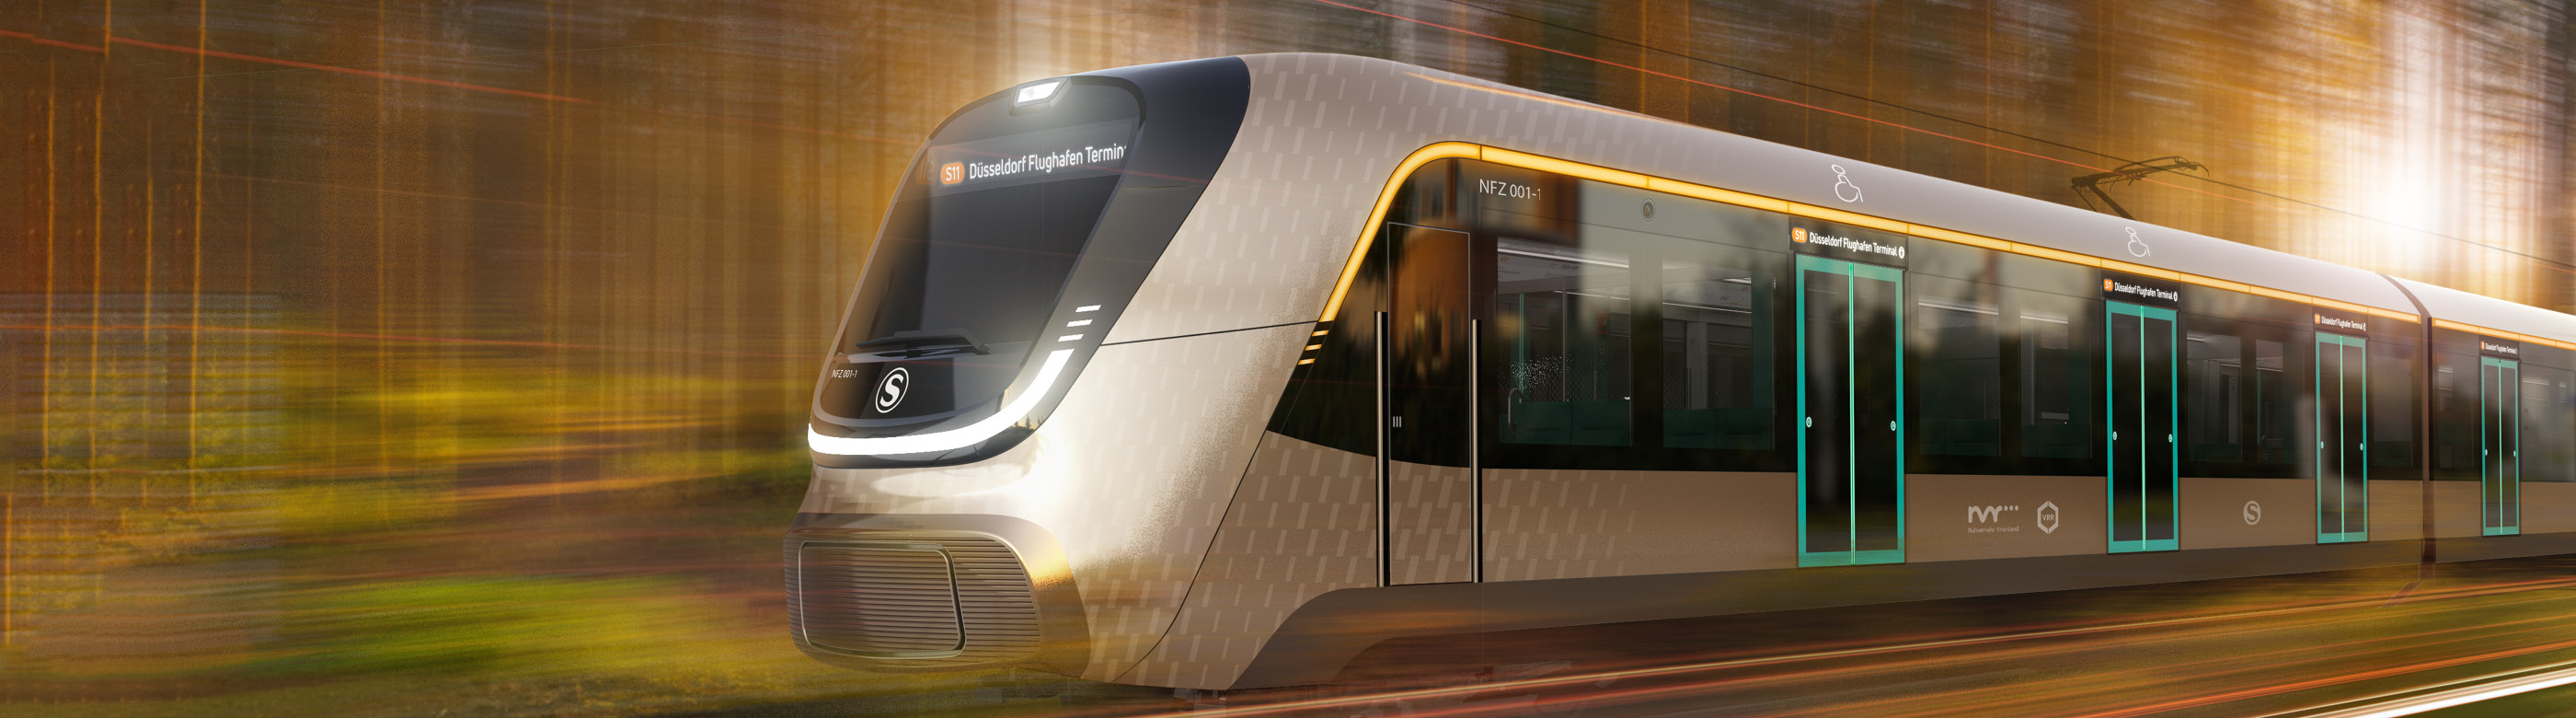 <p>Für die S-Bahn Köln werden neue Züge gebraucht, die ebenso visionär sind wie das geplante S-Bahn-Netz der Zukunft vom NVR. Dazu hat der NVR nun eine Ausschreibung gestartet.</p>